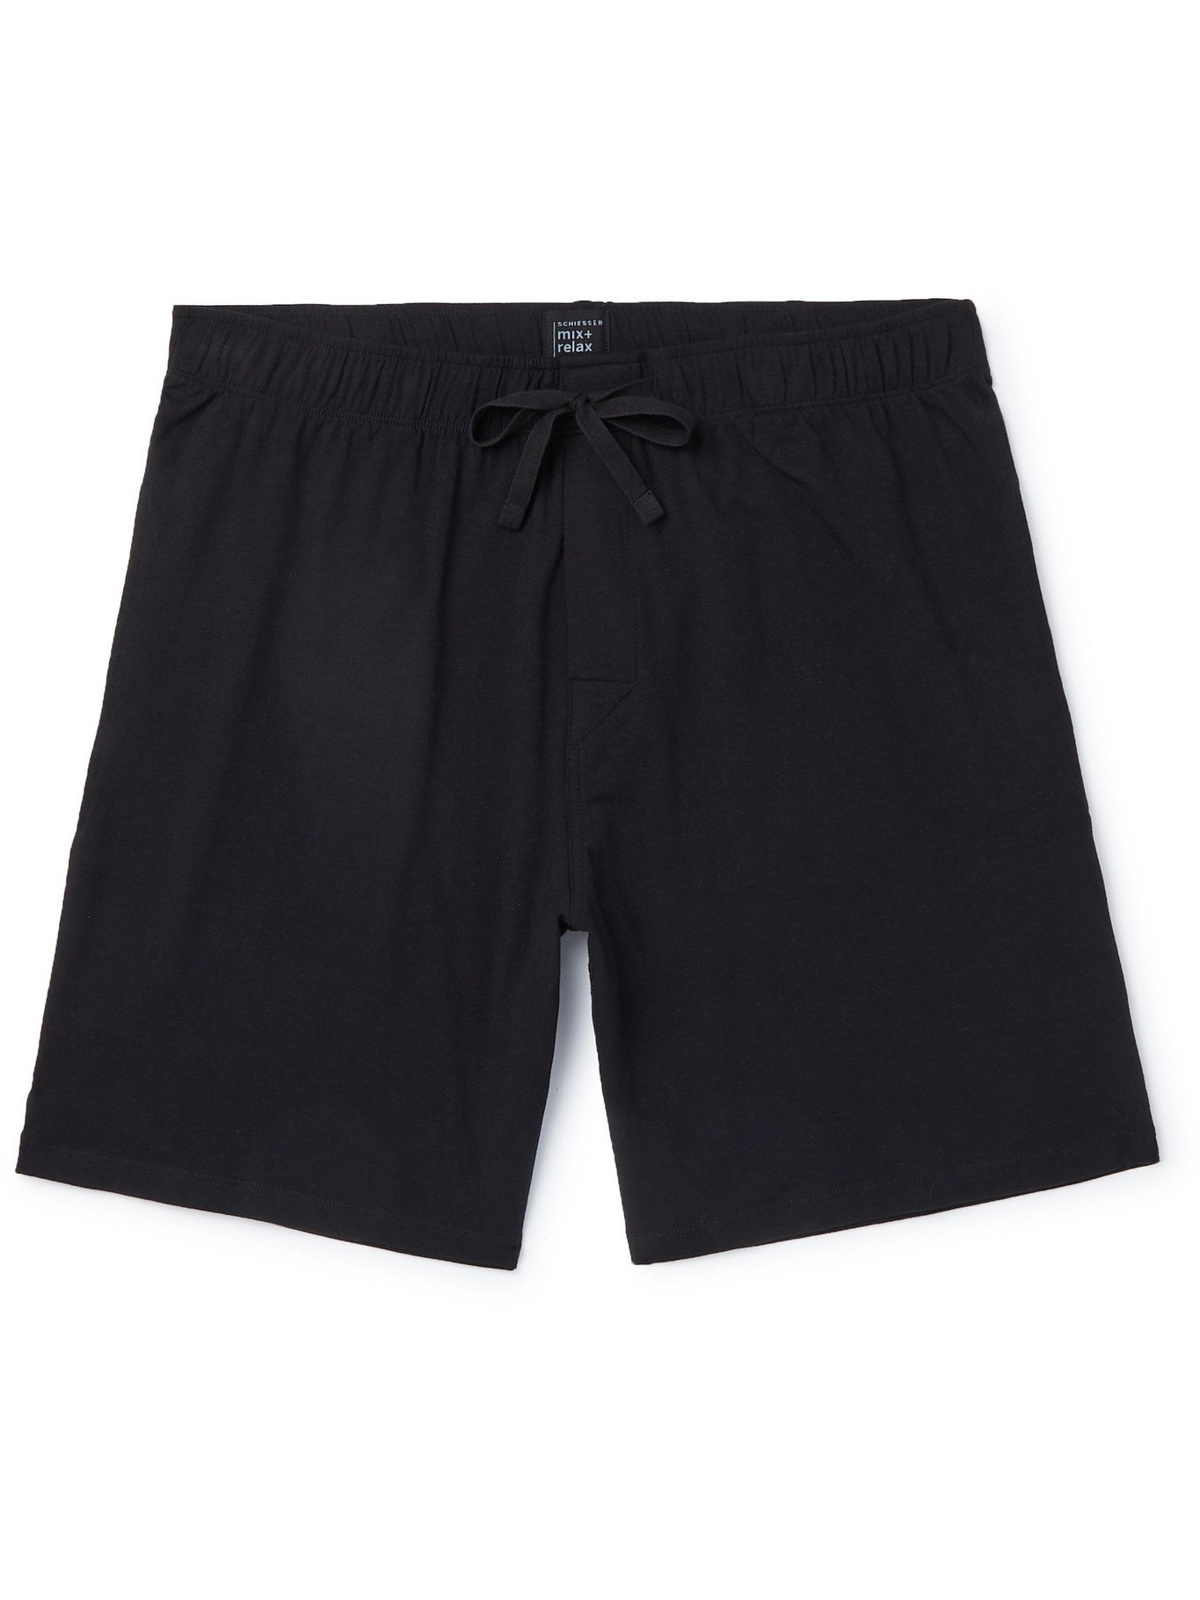 M Black - Shorts Cotton-Jersey Schiesser - SCHIESSER - Pyjama